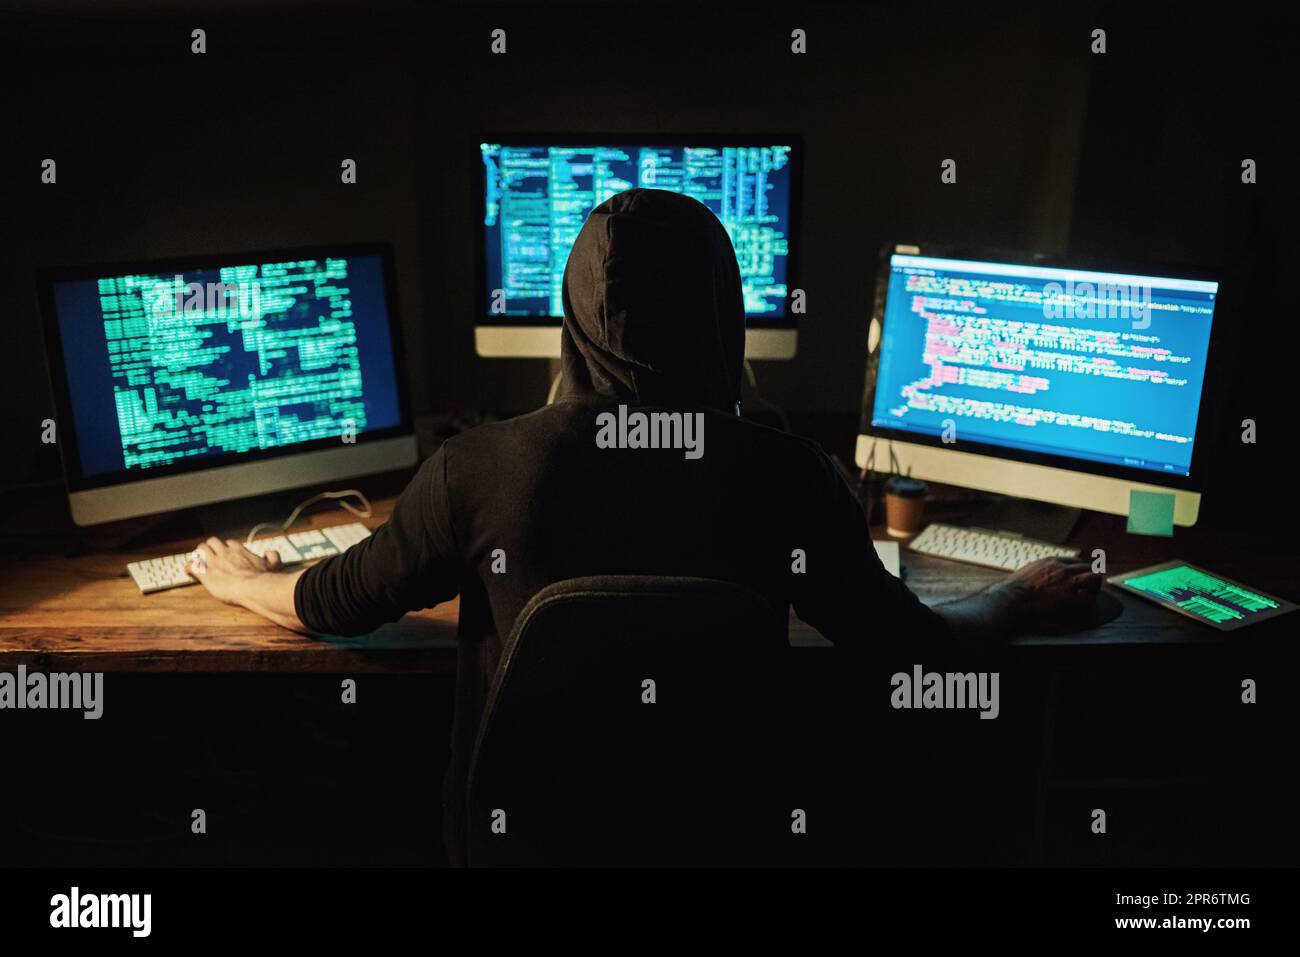 Entwirren des Codes. Rückansicht eines jungen Hackers, der im Dunkeln einen Computercode knackt. Stockfoto